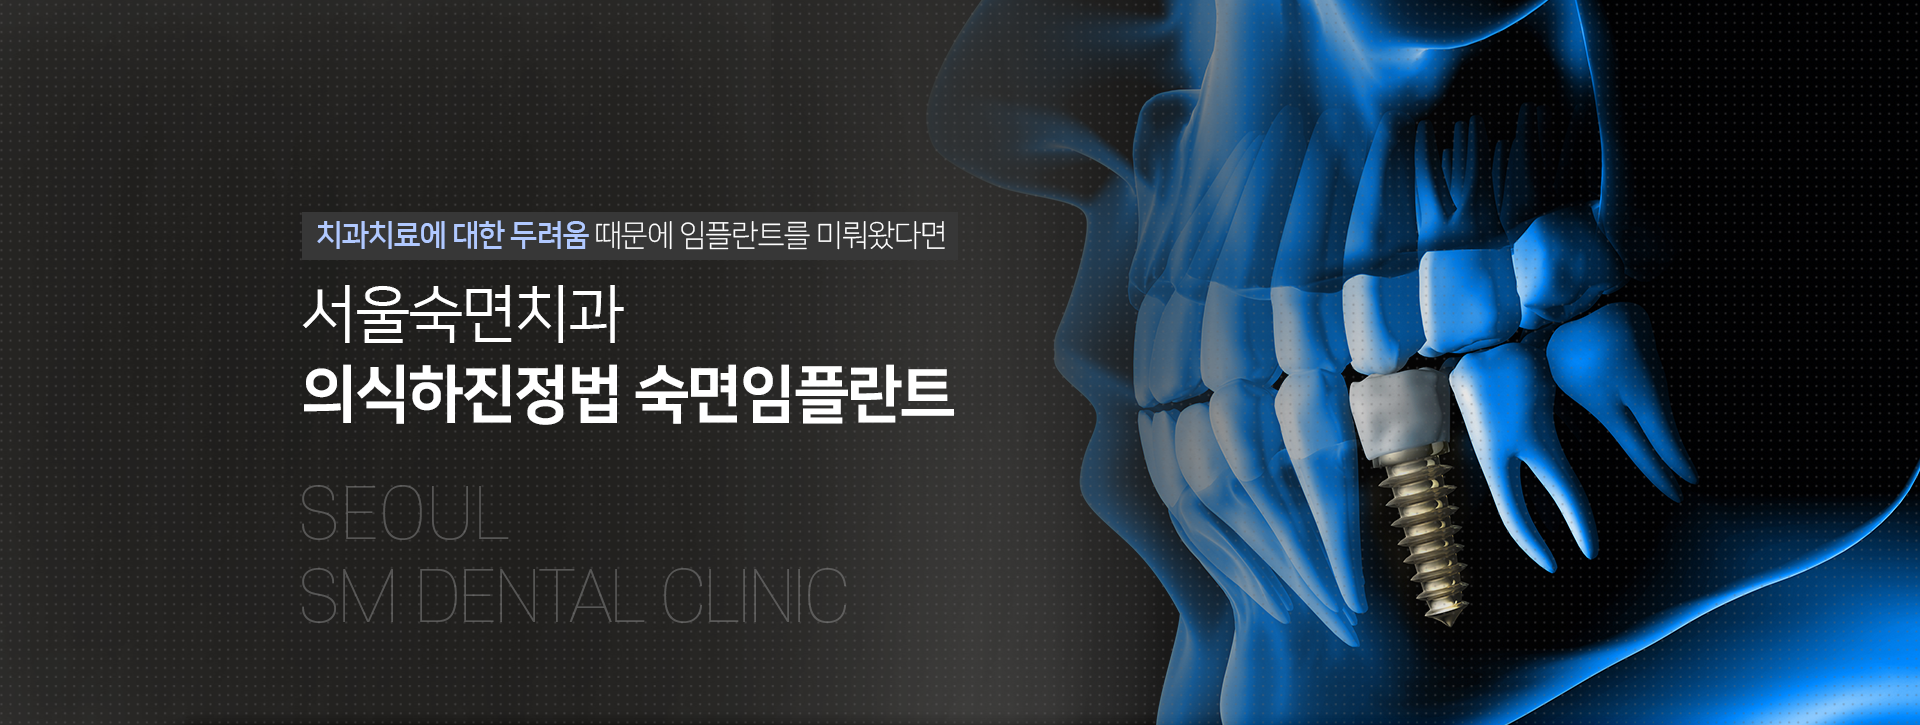 치과치료에-대한-두려움-때문에-임플란트를-미뤄왔다면-서울백련치과-수면임플란트